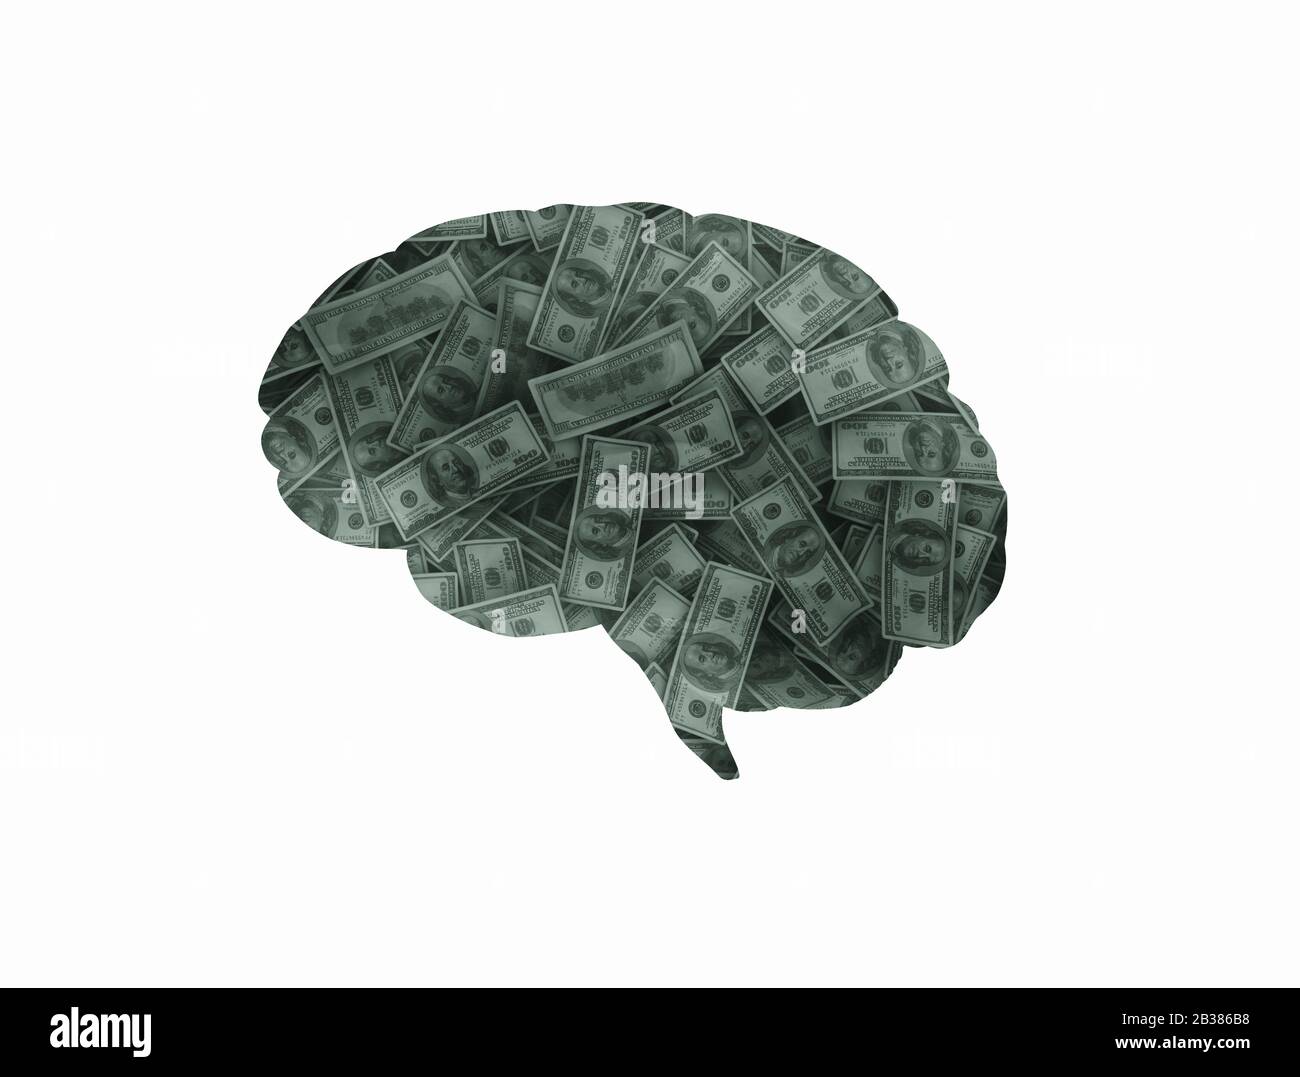 Menschliches Gehirn denkt über Geld nach. US-Bargeldscheine Gehirn auf weißem Hintergrund Stockfoto